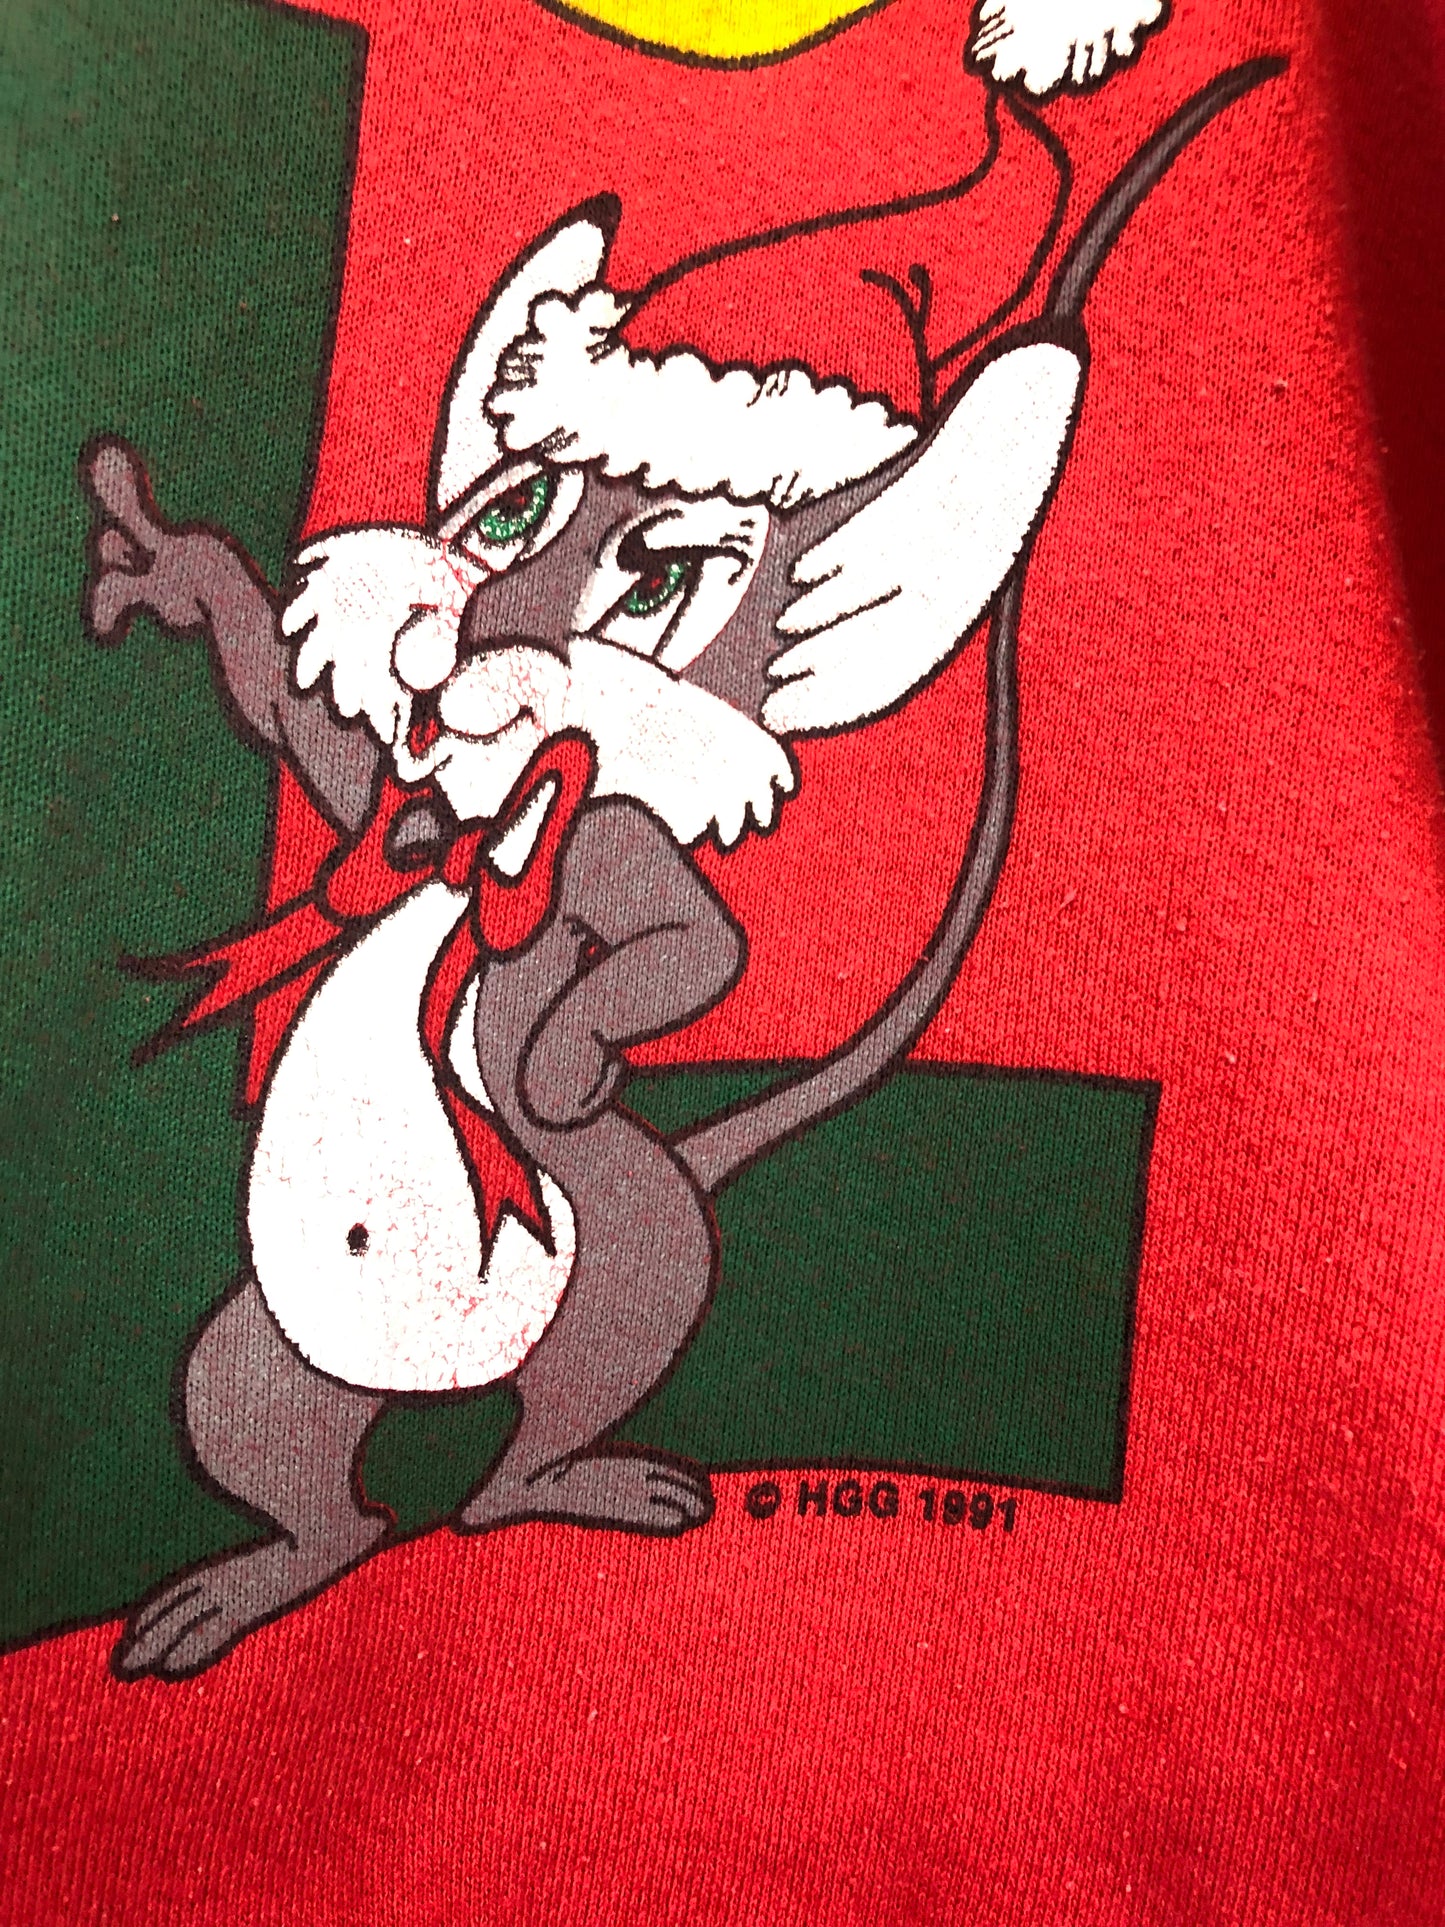 1991 Chipmunk Noel Holiday Sweatshirt